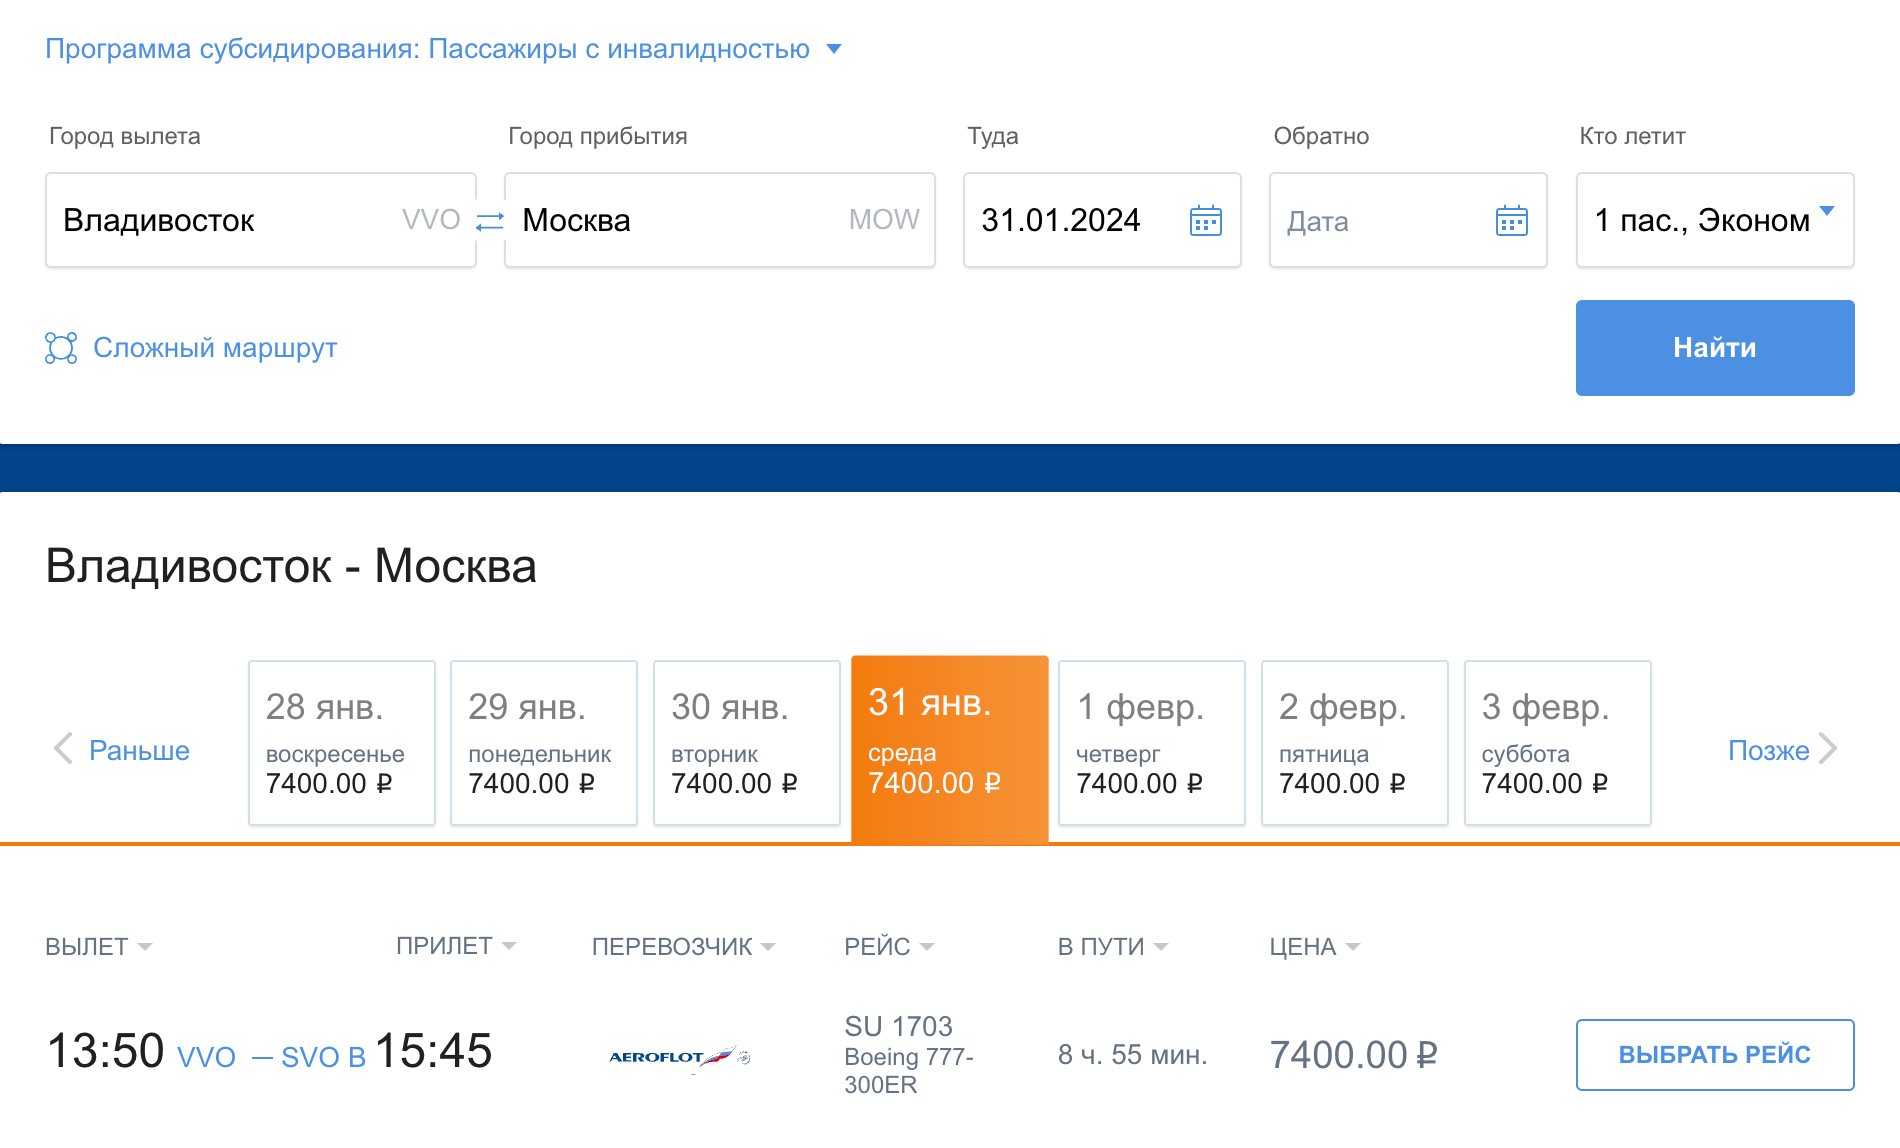 Субсидируемый билет для пассажира с инвалидностью или другого льготника, кроме зарегистрированного в ДФО, стоит еще дешевле — 7400 ₽. Источник: aeroflot.ru